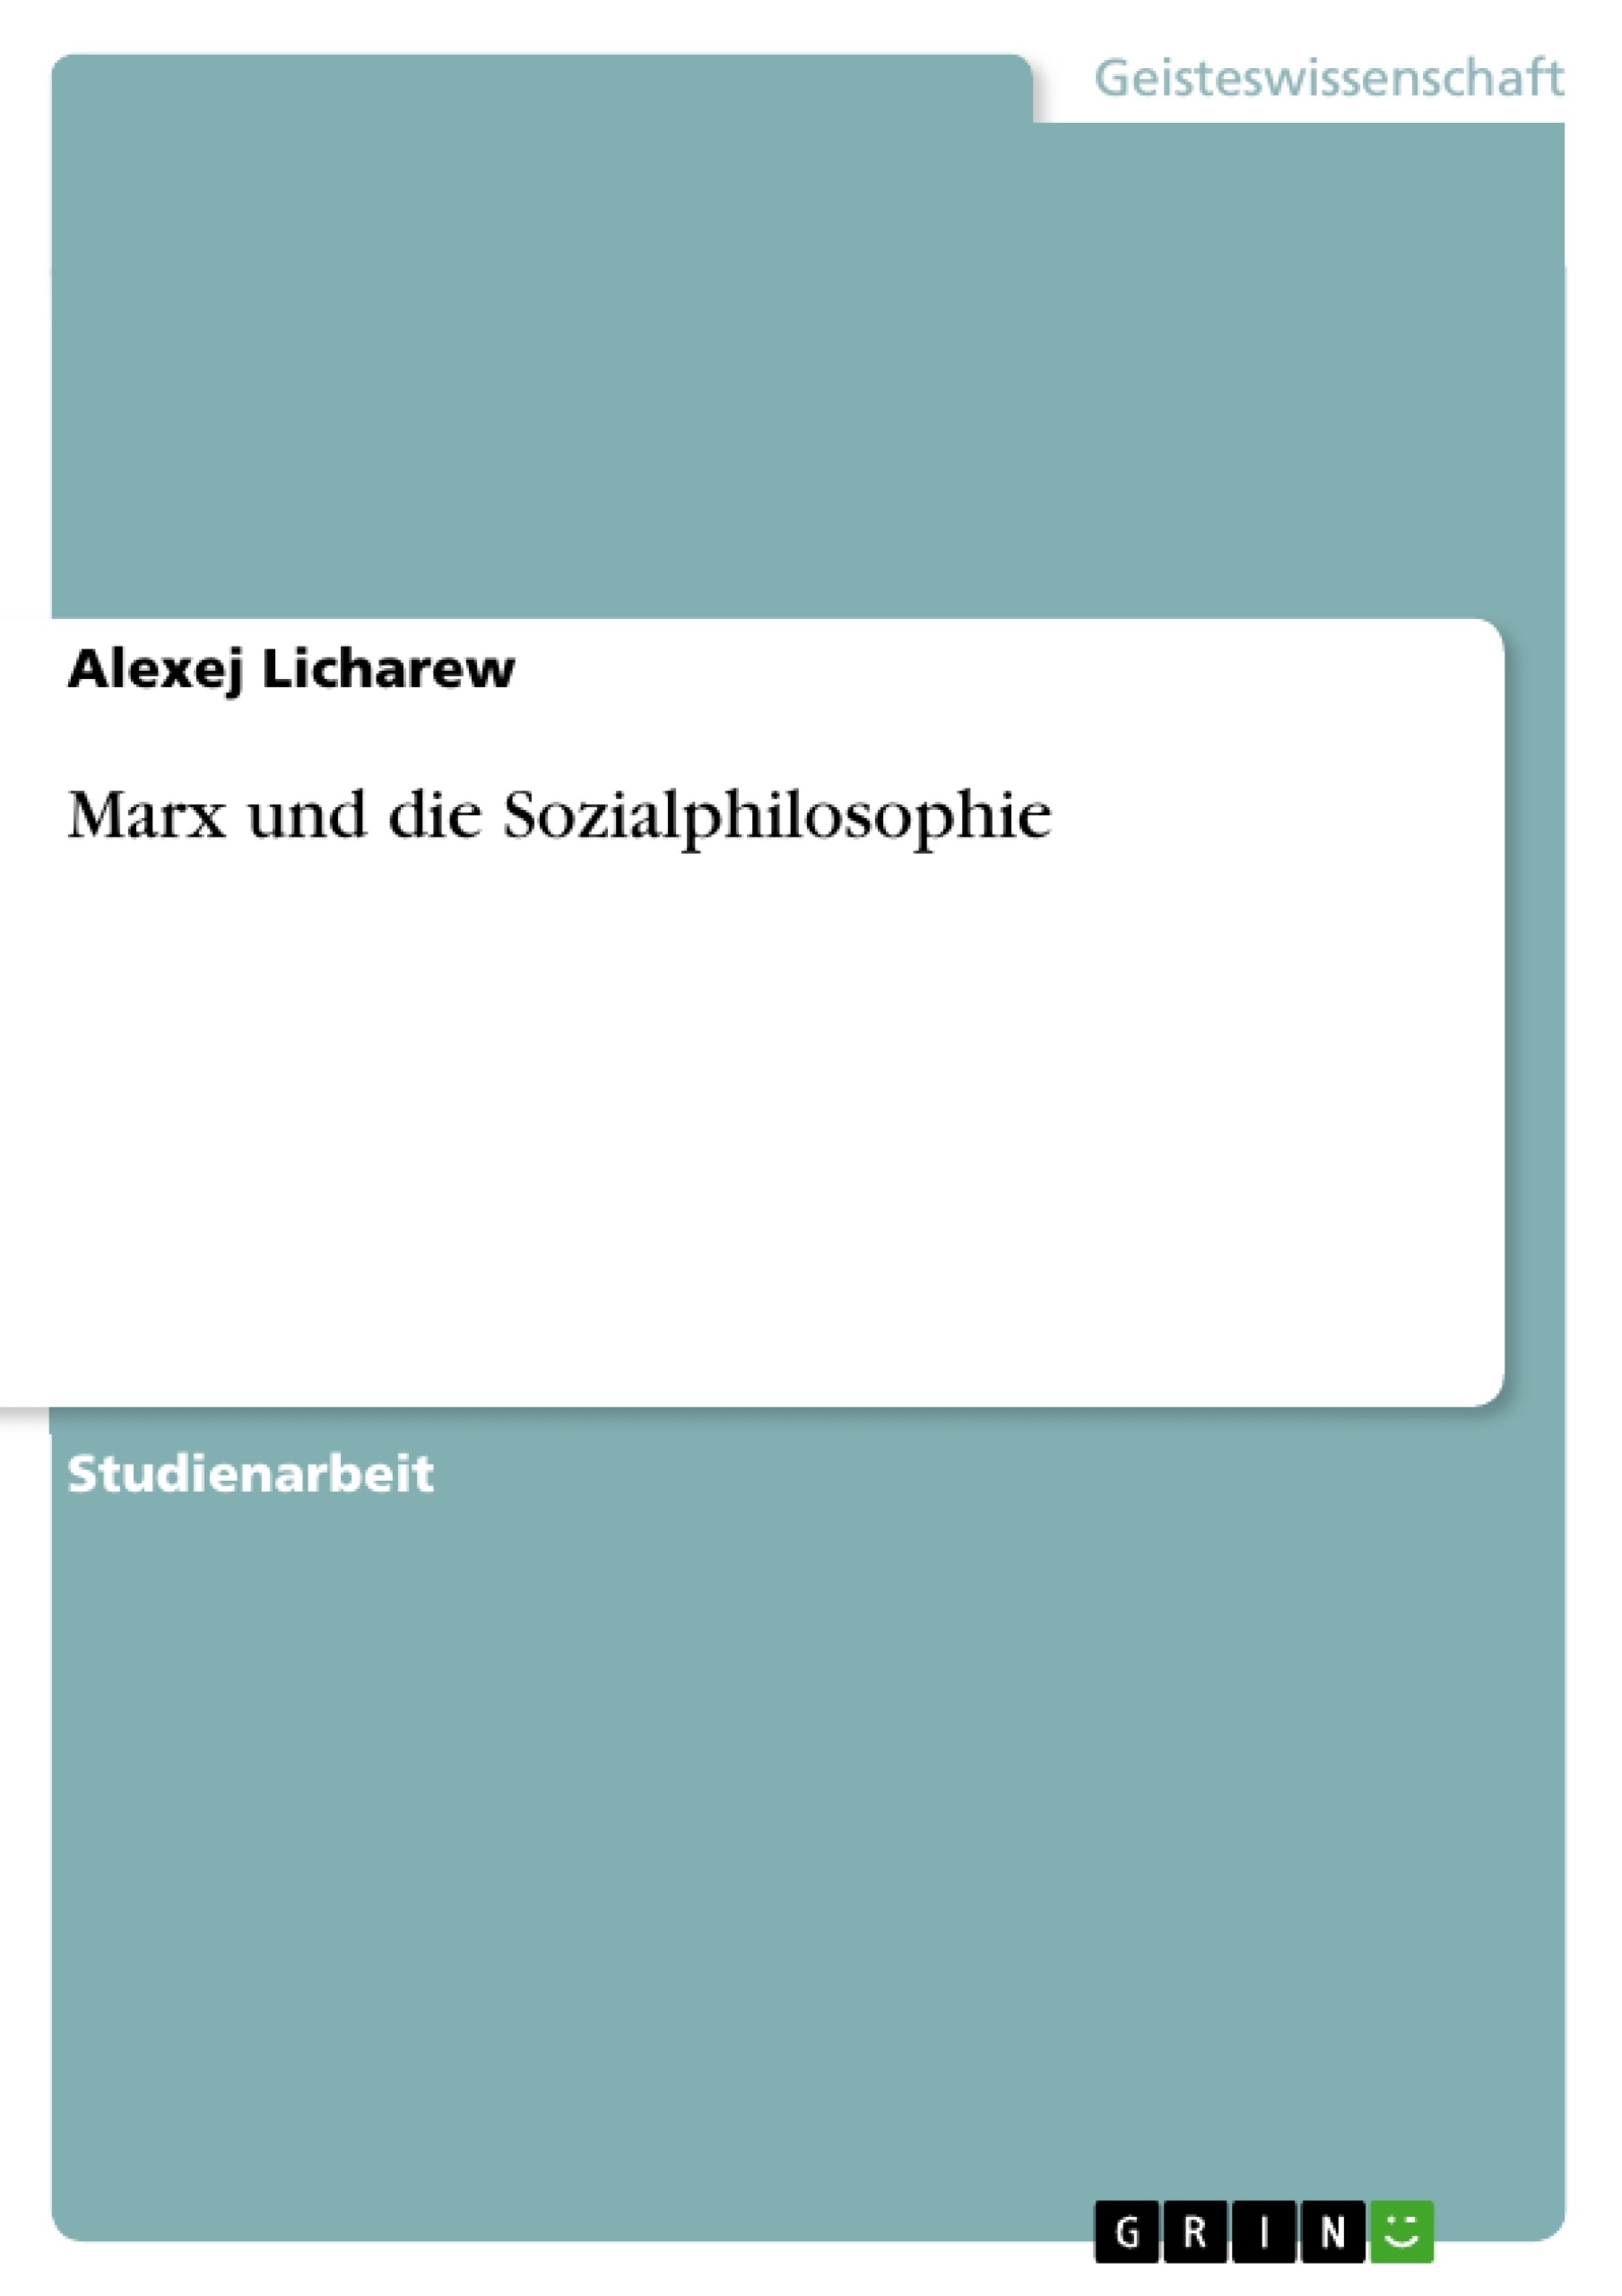 Título: Marx und die Sozialphilosophie